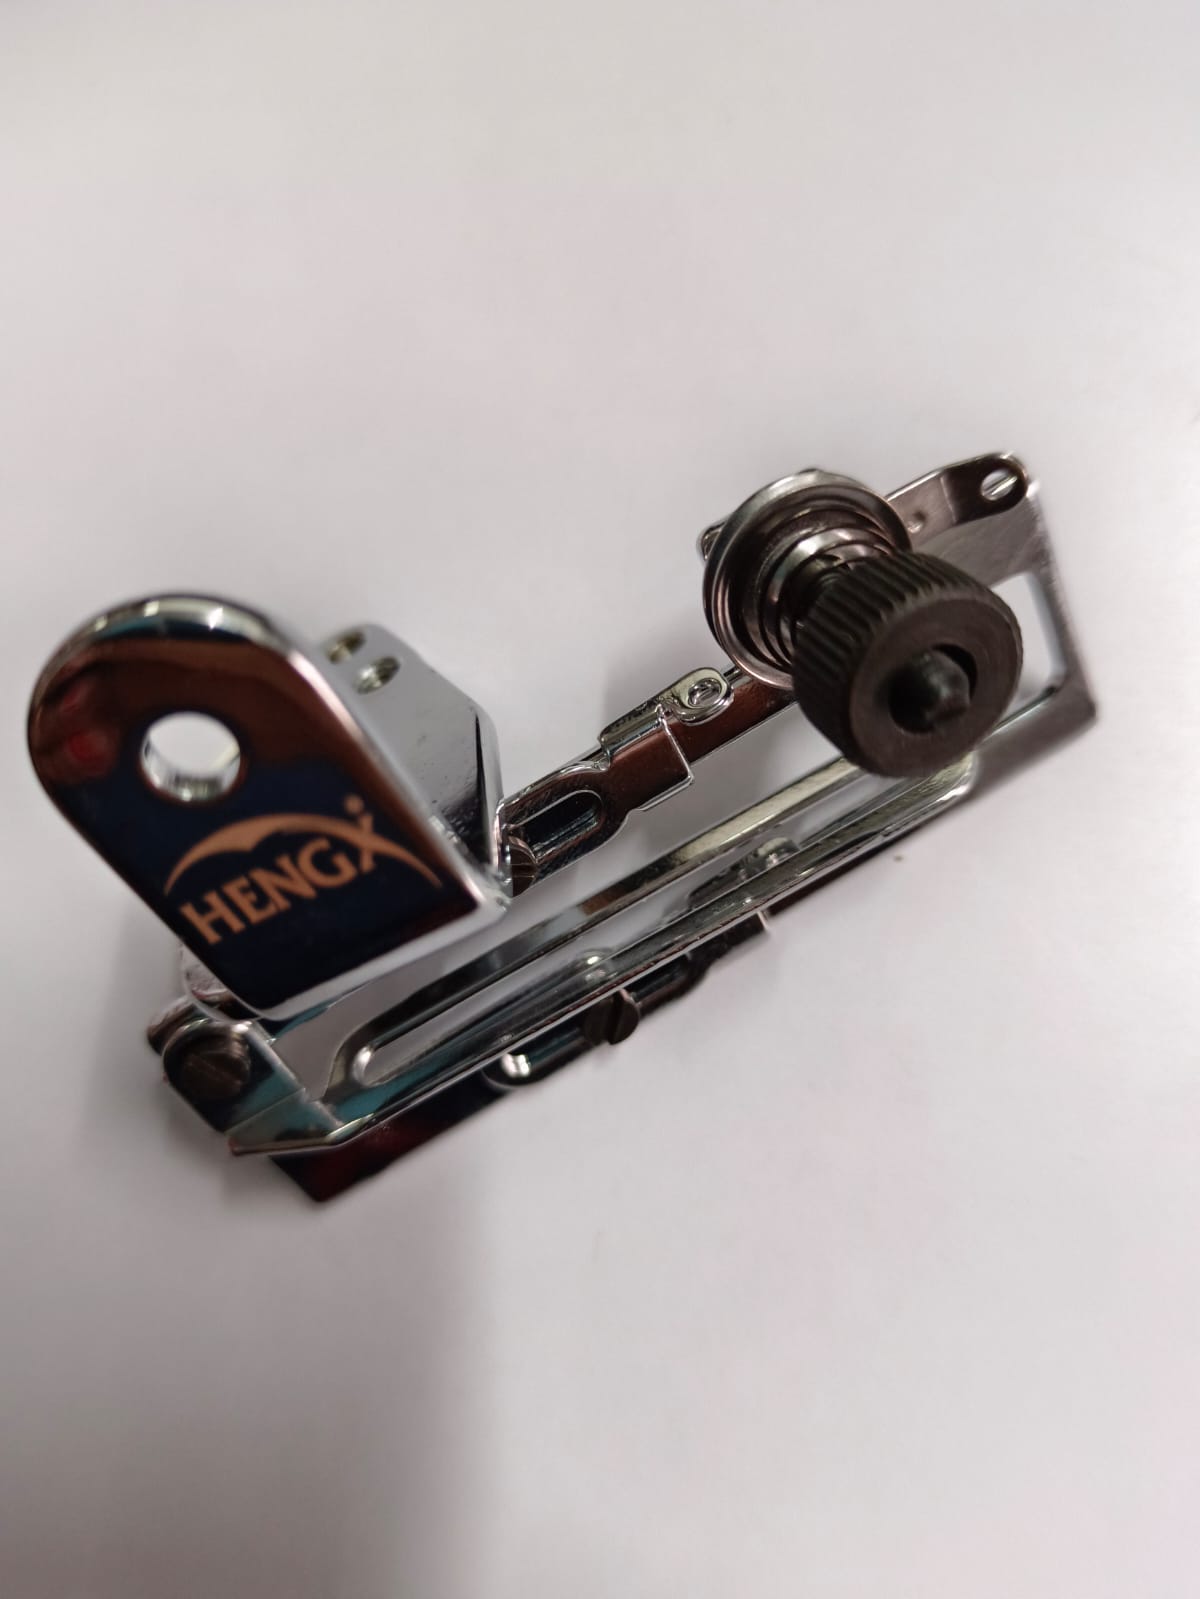 Juego completo de soporte de leva 30112231/30112233/30313019/30313020 (juego Paan) para JACK JK-8569-A, JACK JK-8569D Flatlock/Interlock pieza de repuesto para máquina de coser